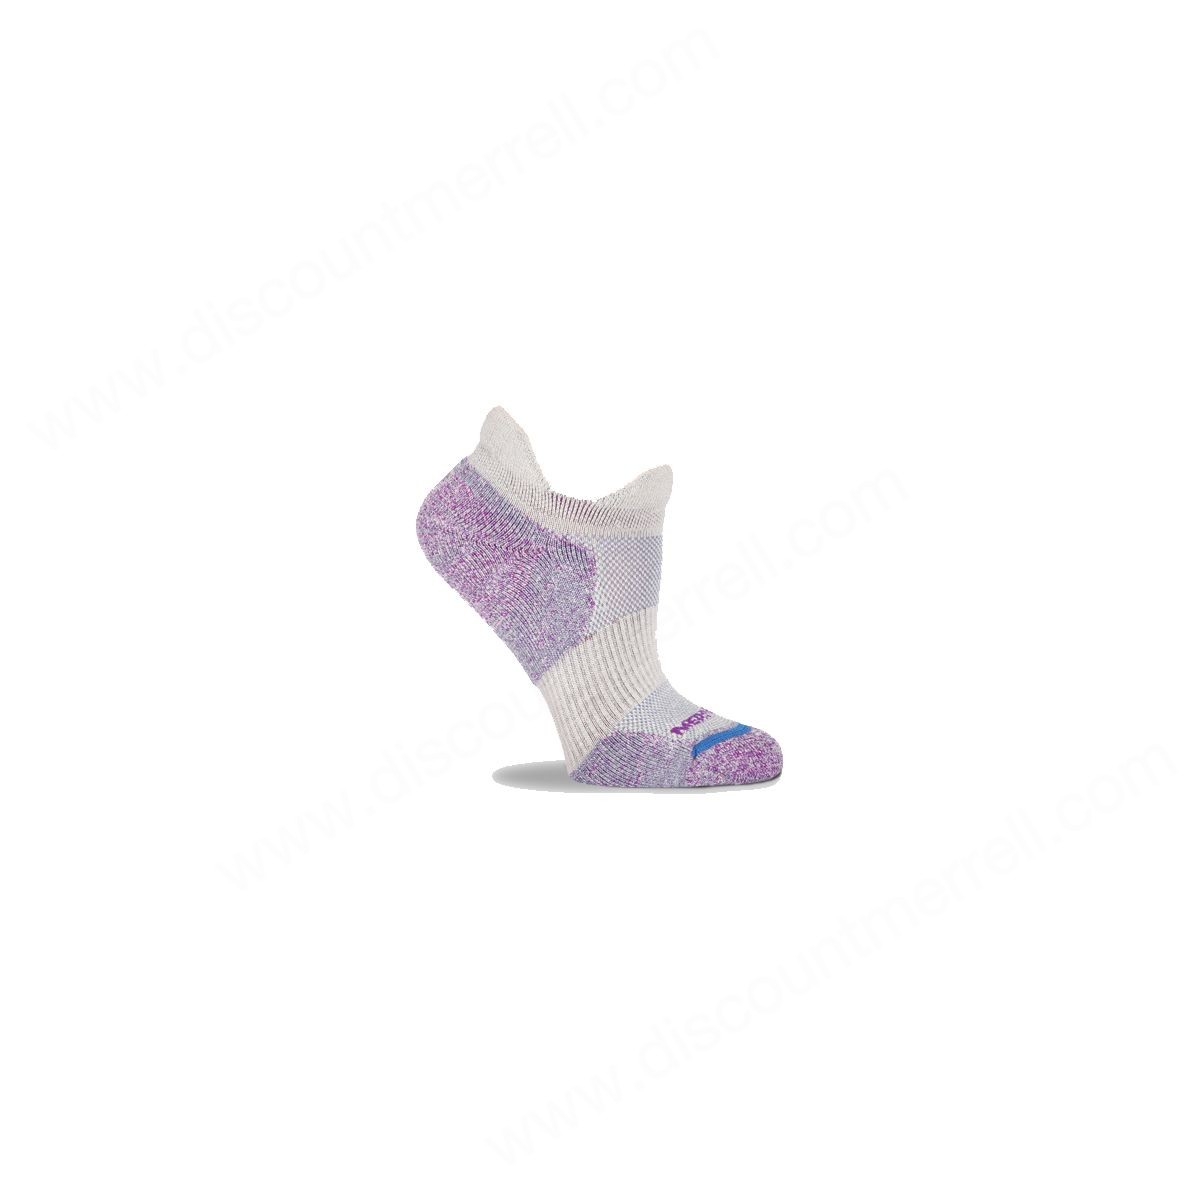 Merrell Womens's Dual Tab Trail Runner Sock Light Gray - Merrell Womens's Dual Tab Trail Runner Sock Light Gray